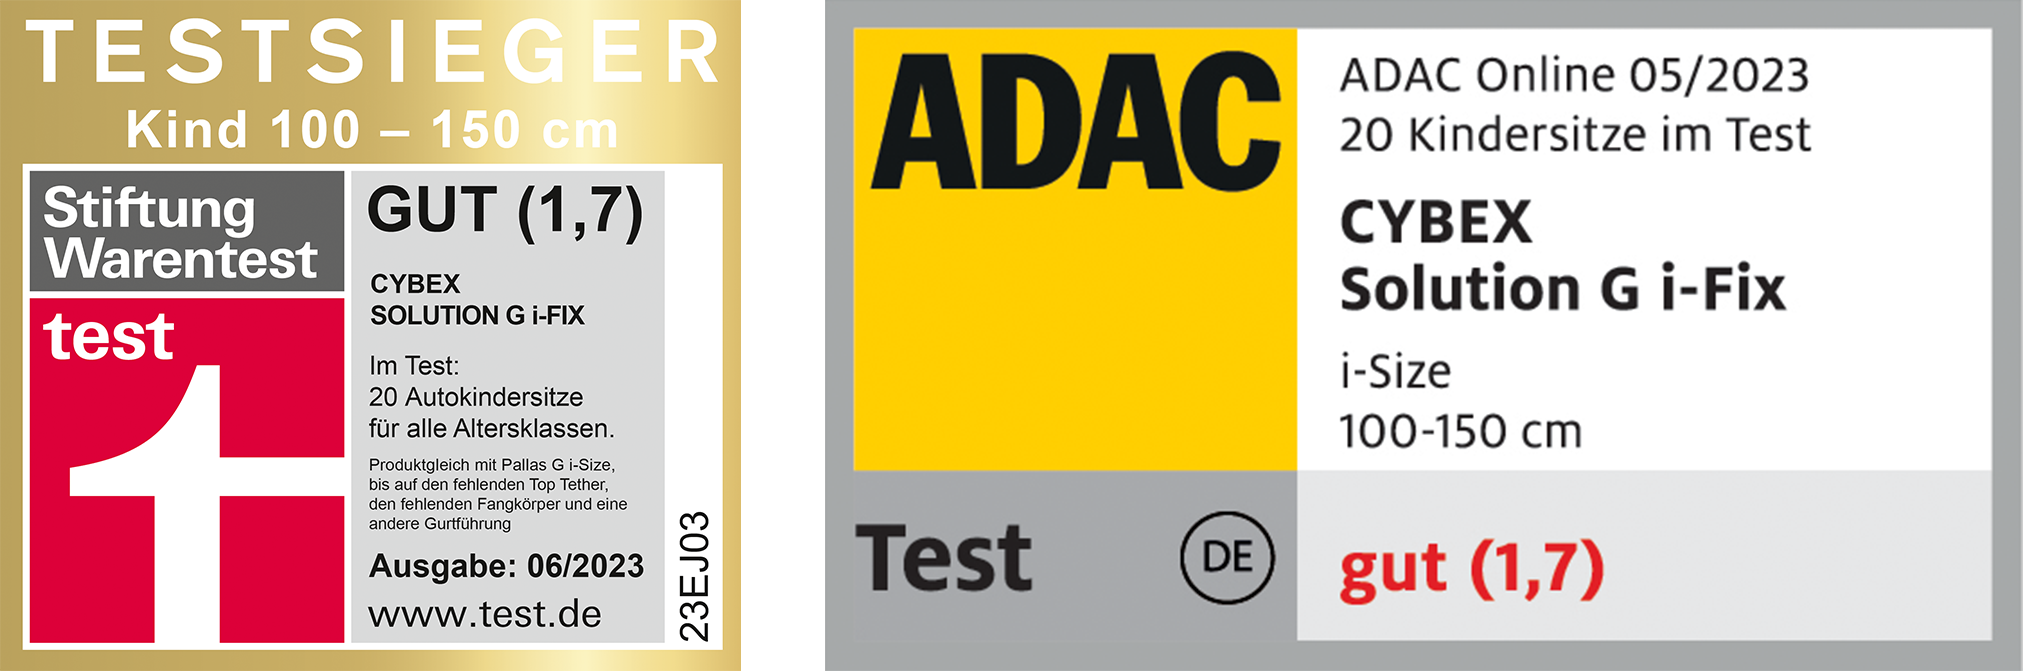 ADAC Kindersitztest Mai 2023 Testsieger: Der Cybex Solution G i